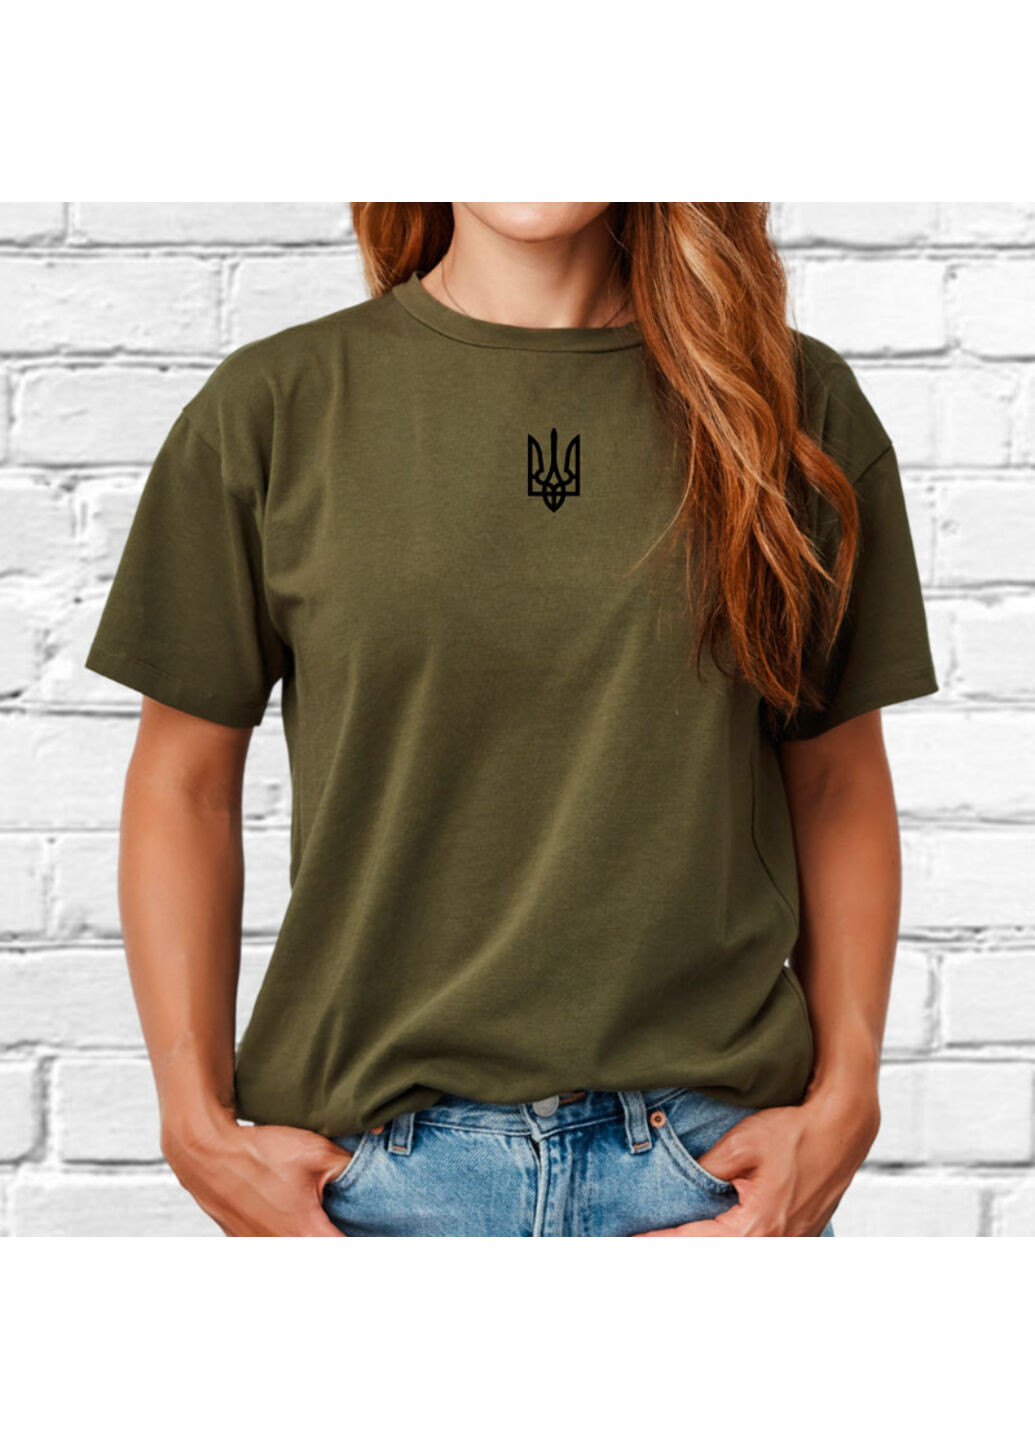 Хакі (оливкова) футболка з вишивкою чорного тризуба жіноча millytary green m No Brand